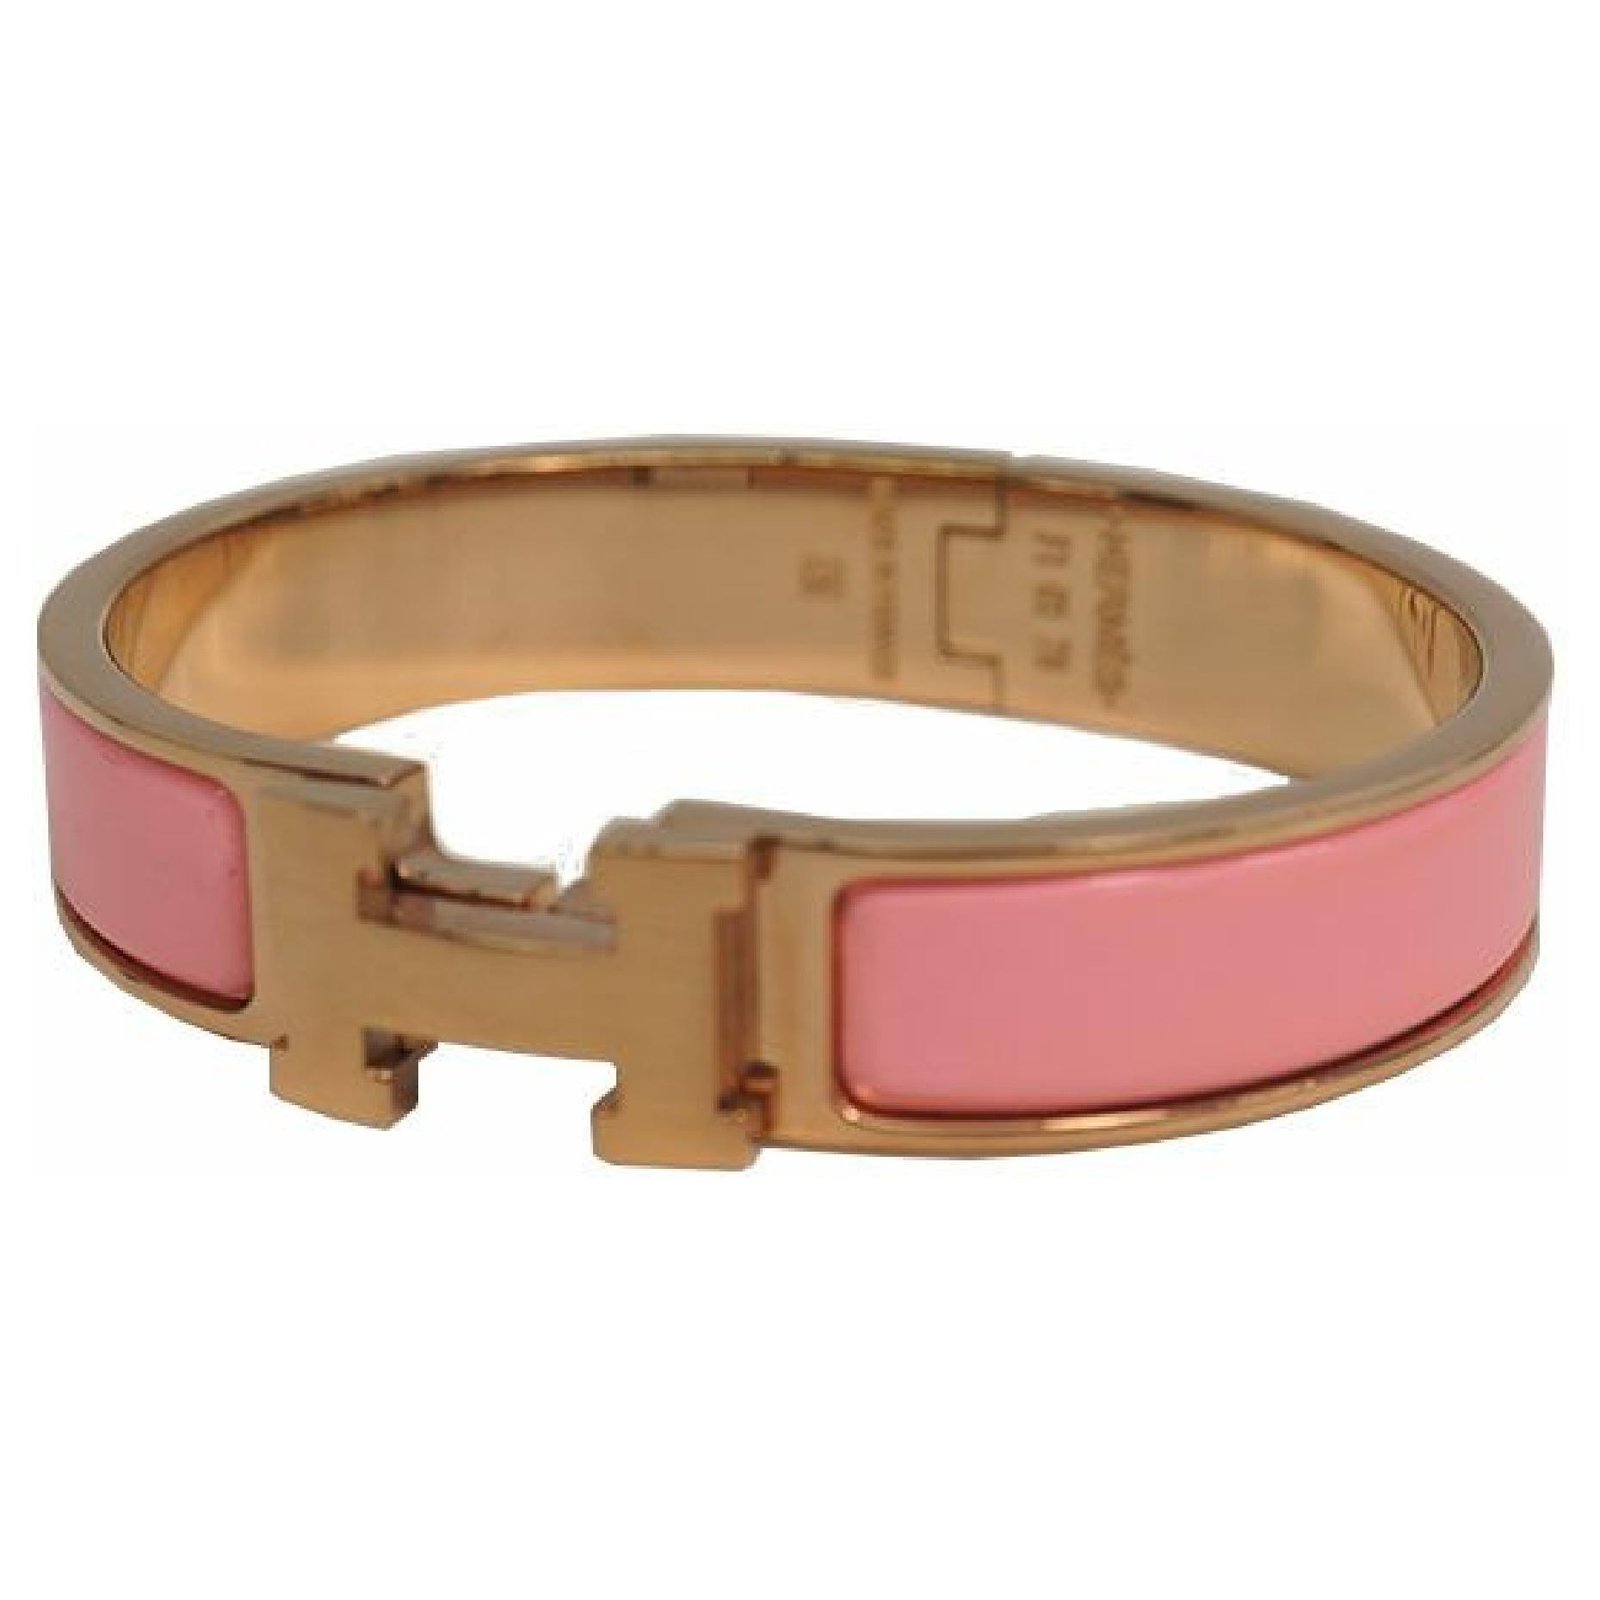 hermes bracelet pink